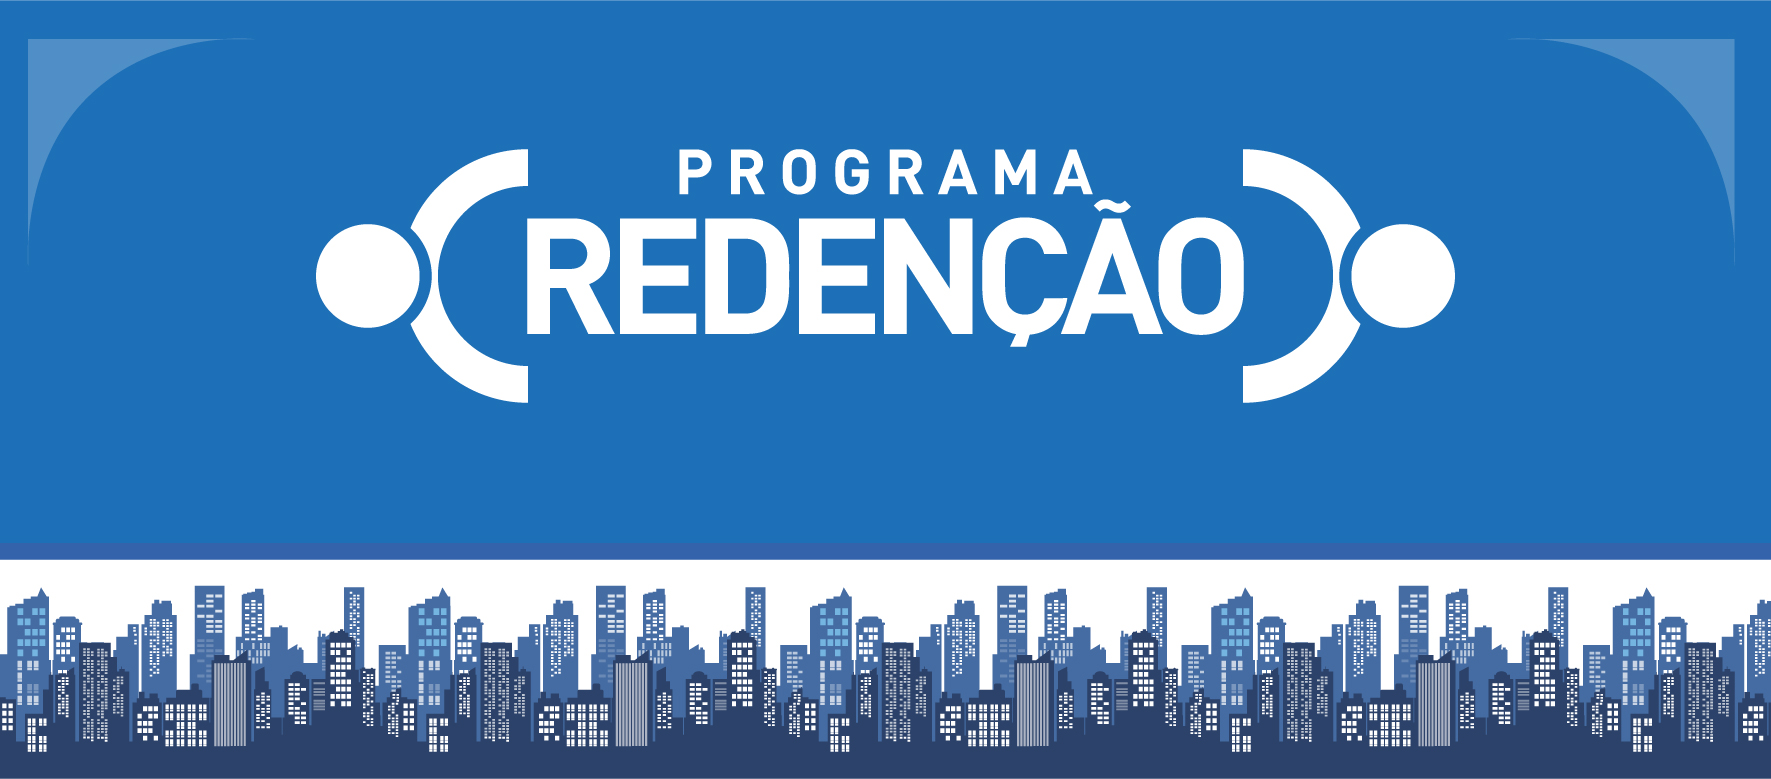 Arte possui fundo azul. Centralizado, na cor branca, o logo do Programa Redenção. No rodapé, faixa ilustrada com ícones de prédios da cidade de São Paulo.